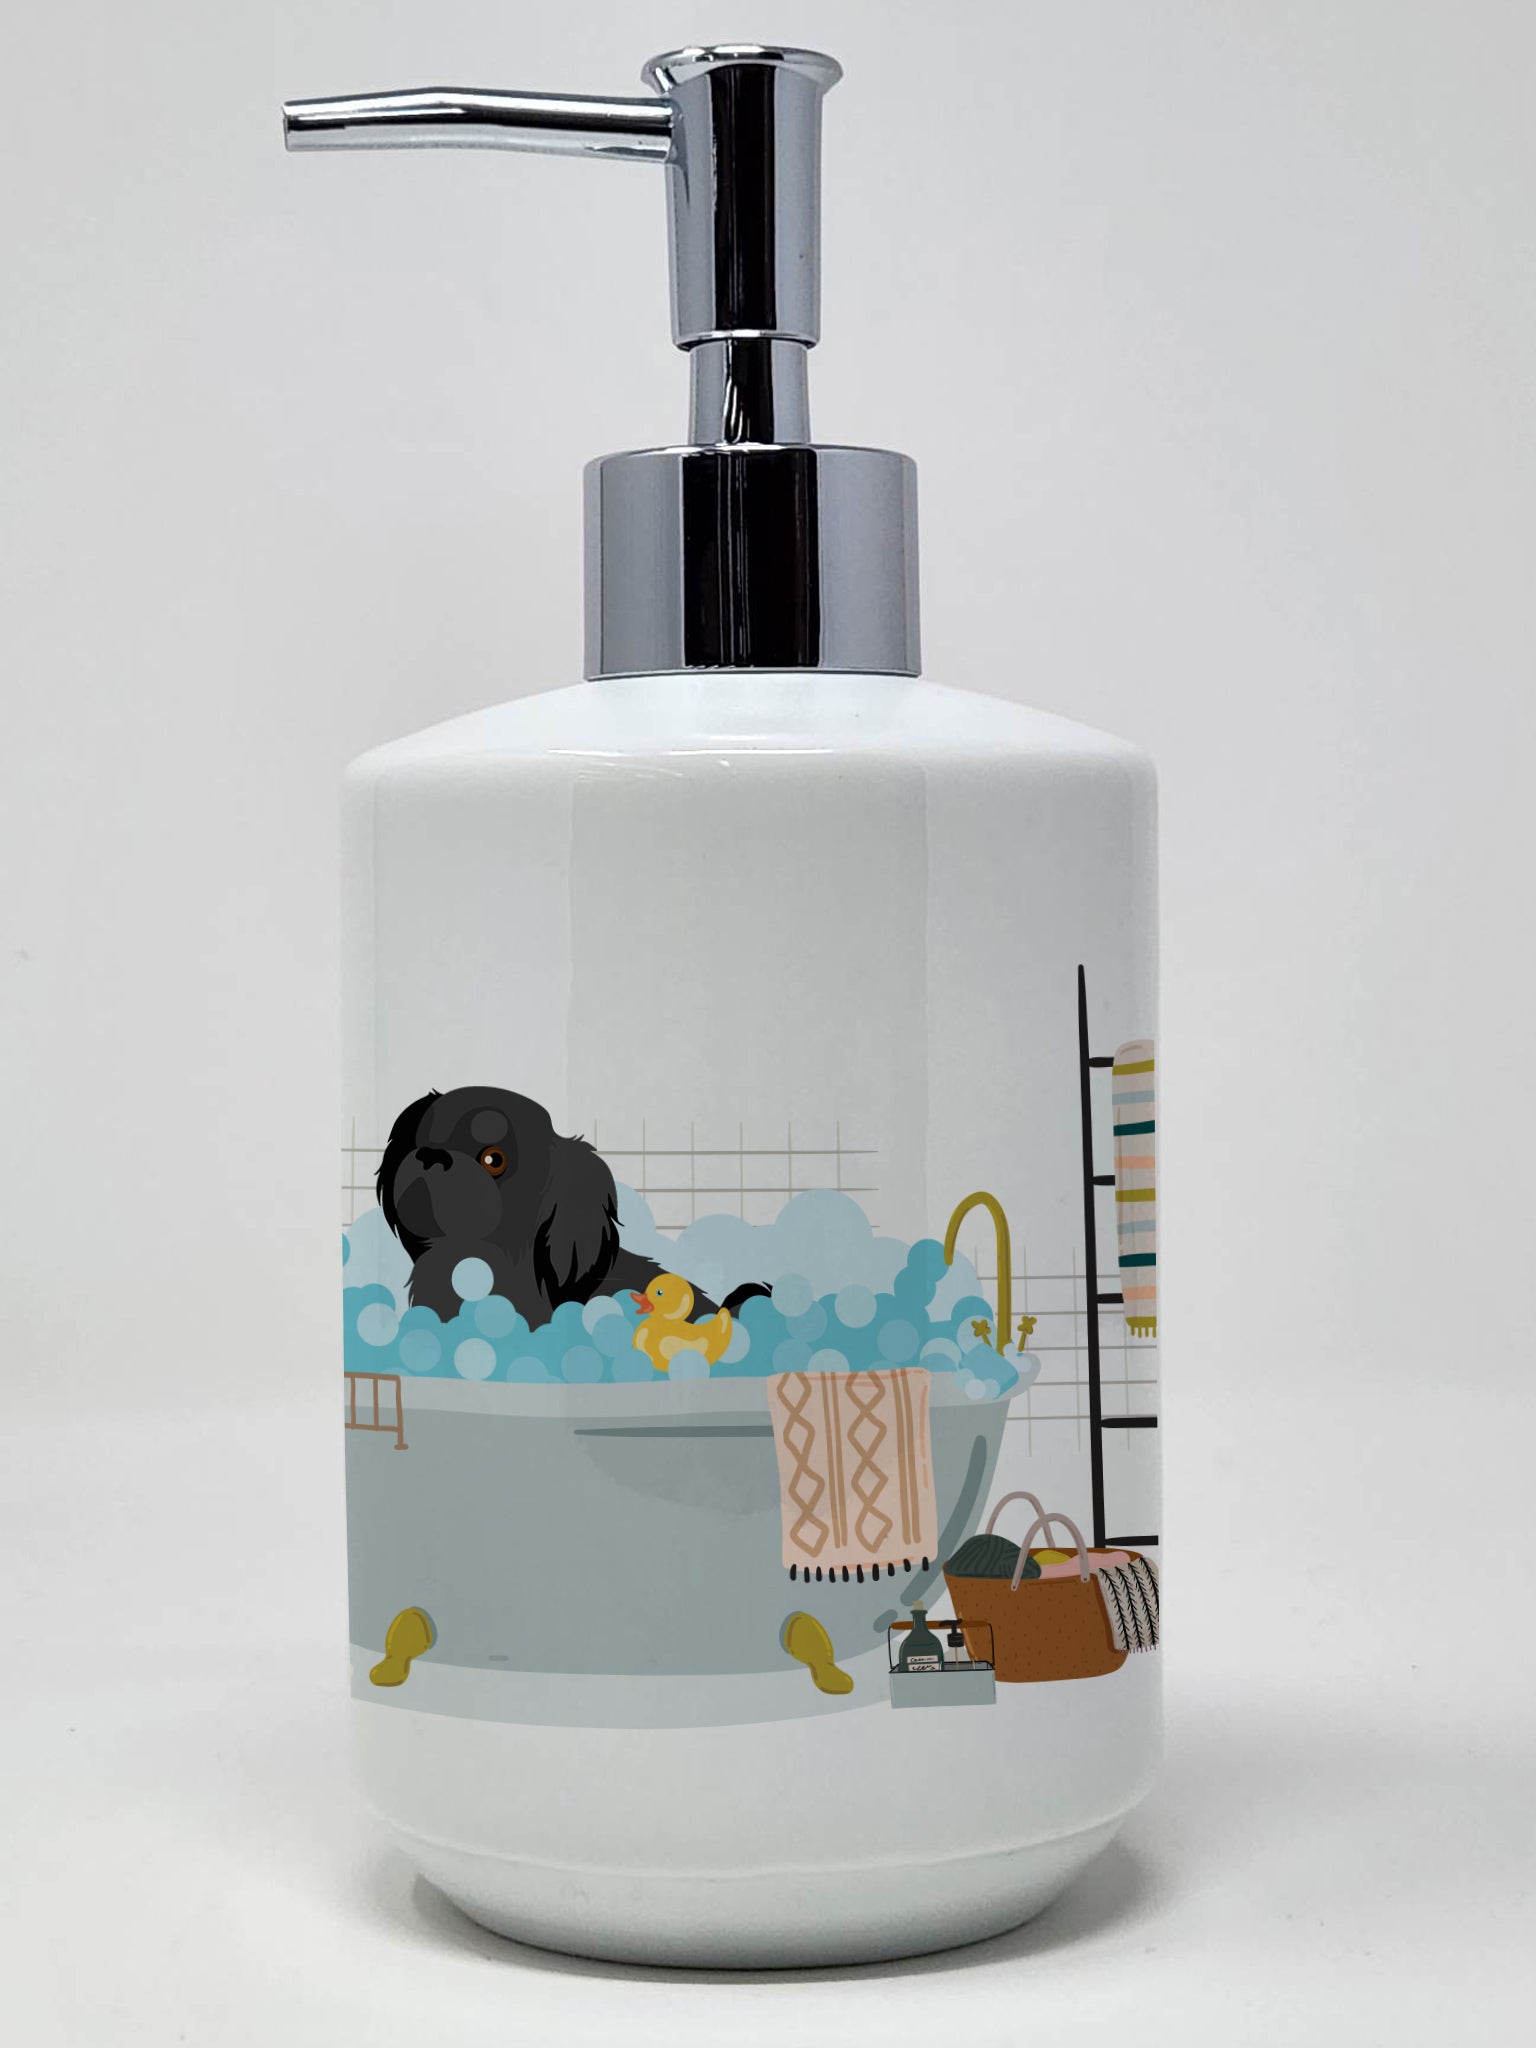 Buy this Black Pekingese Ceramic Soap Dispenser